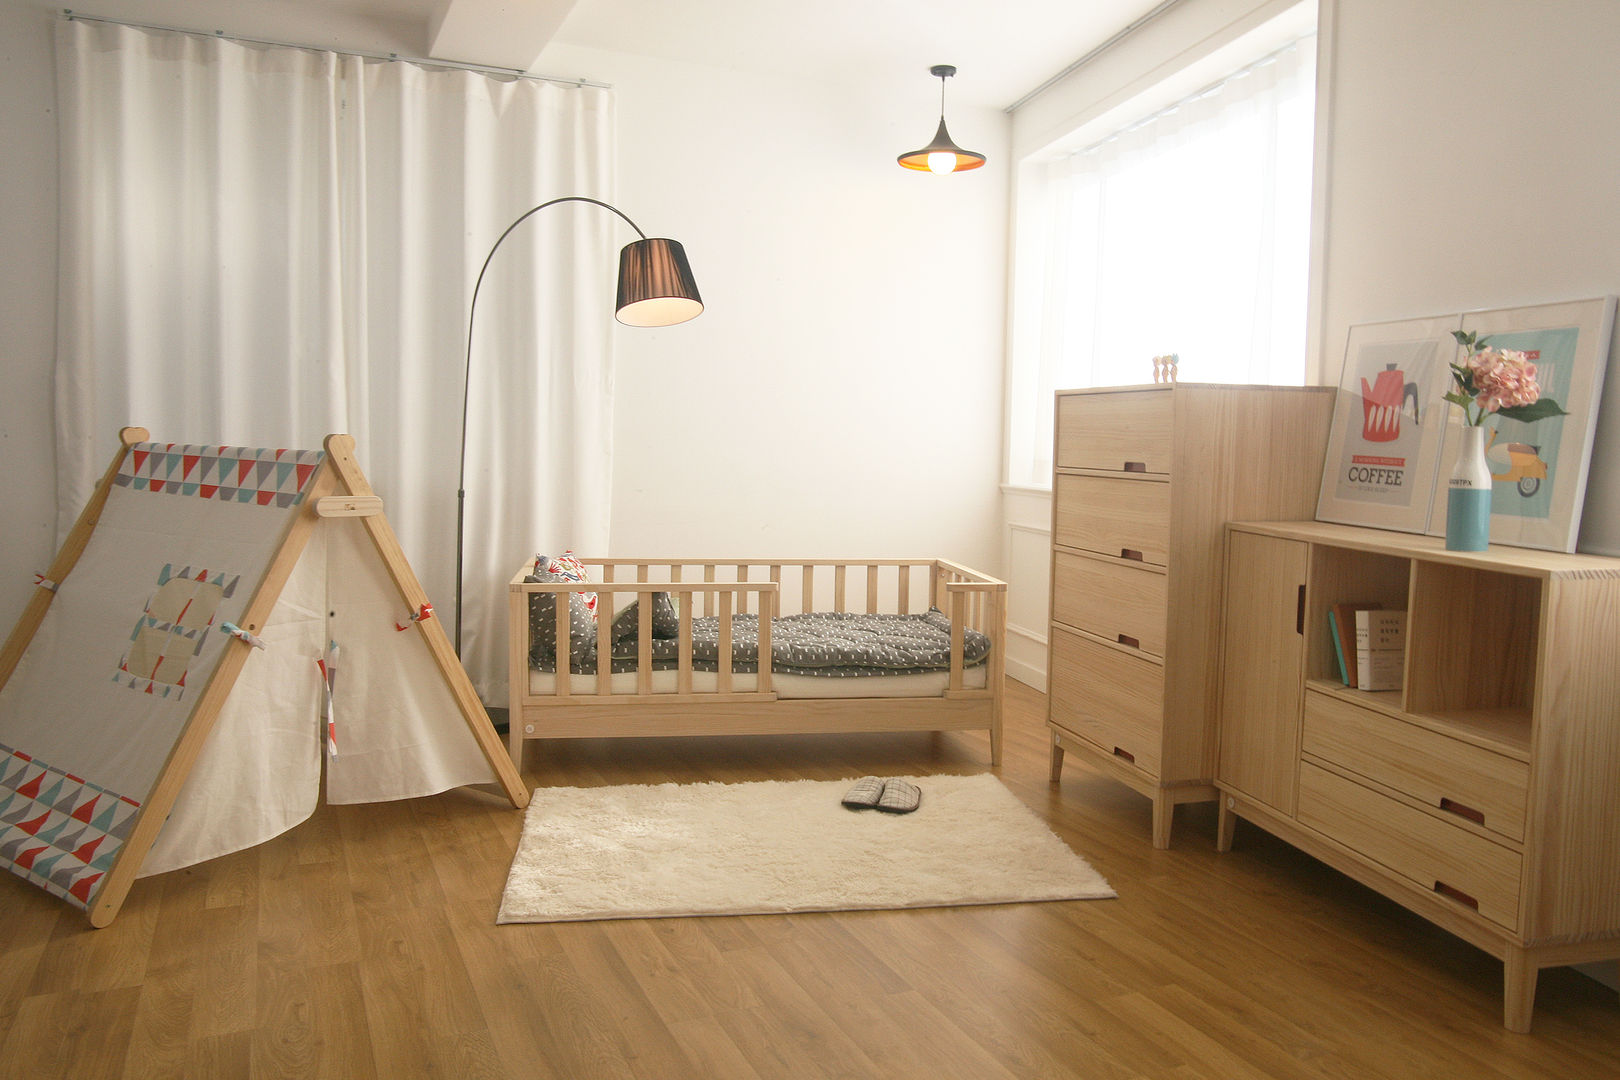 변형이 가능한 아동가구 끌렘 입니다., 끌렘(KKLEM) 끌렘(KKLEM) Nursery/kid’s room Beds & cribs